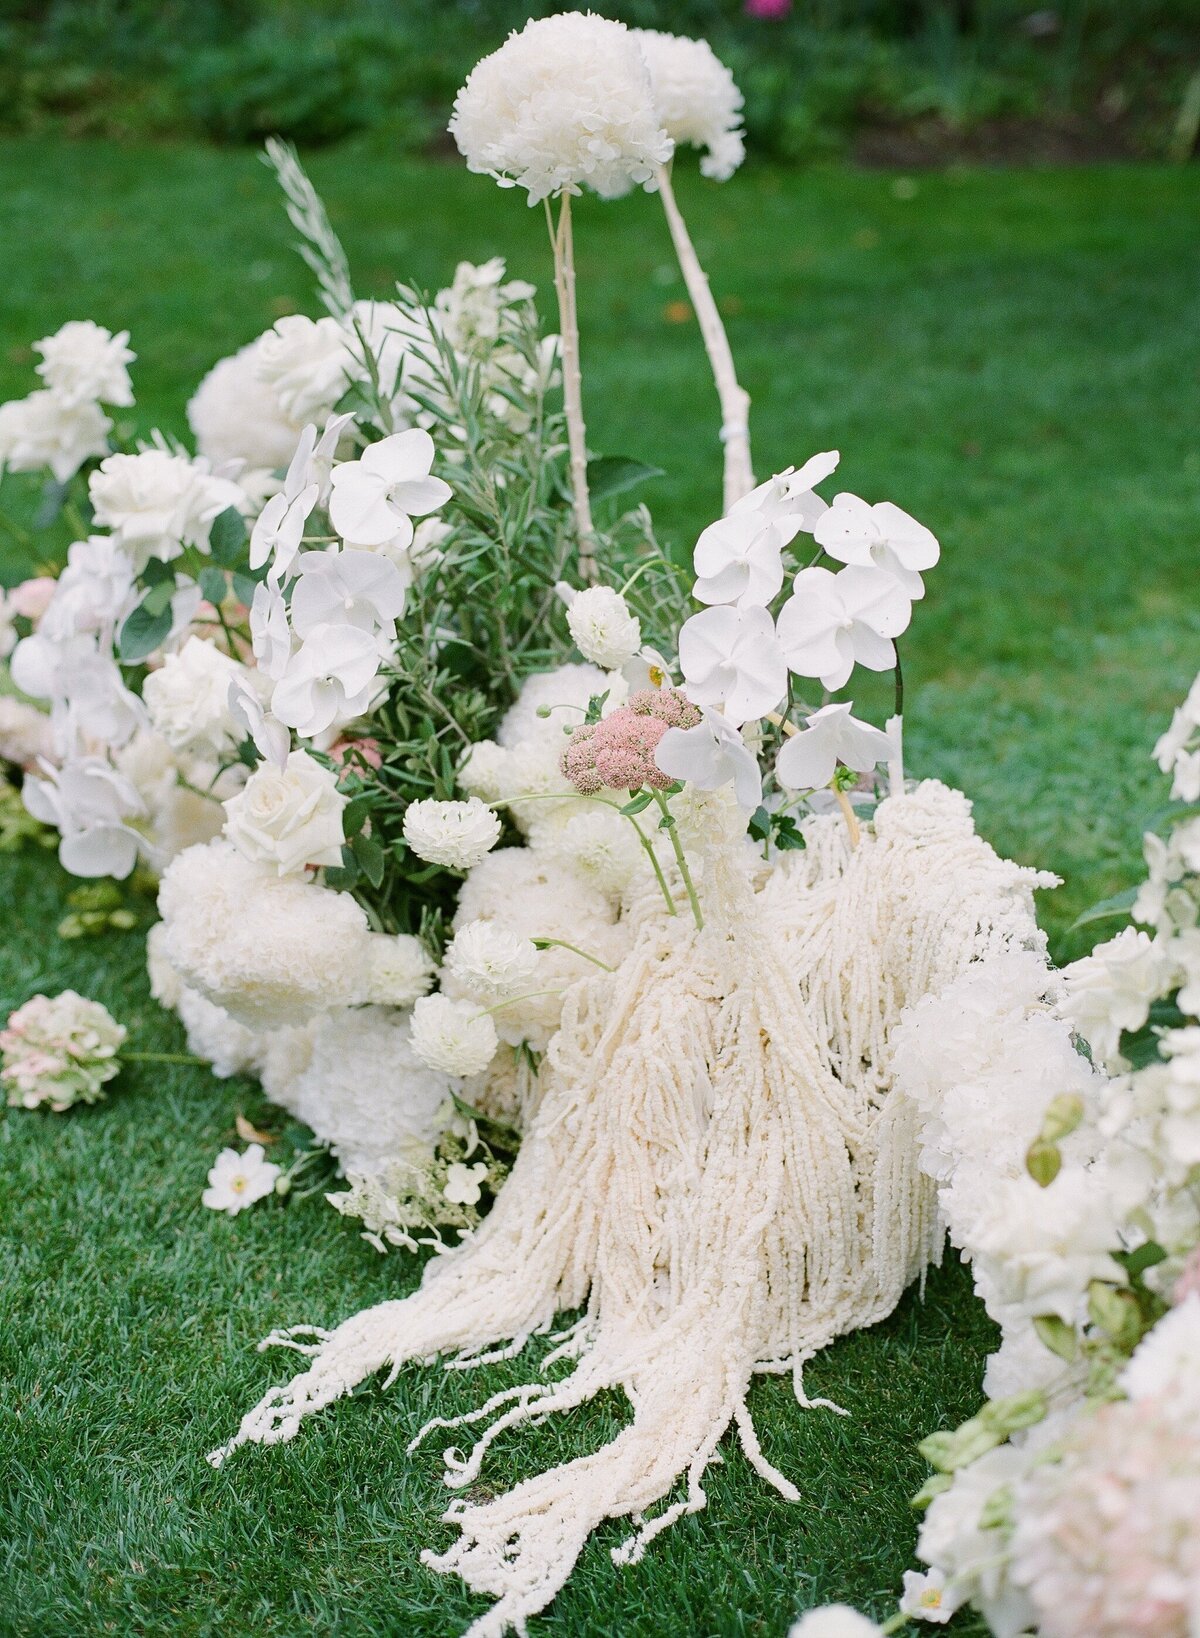 Ceremony white flowers